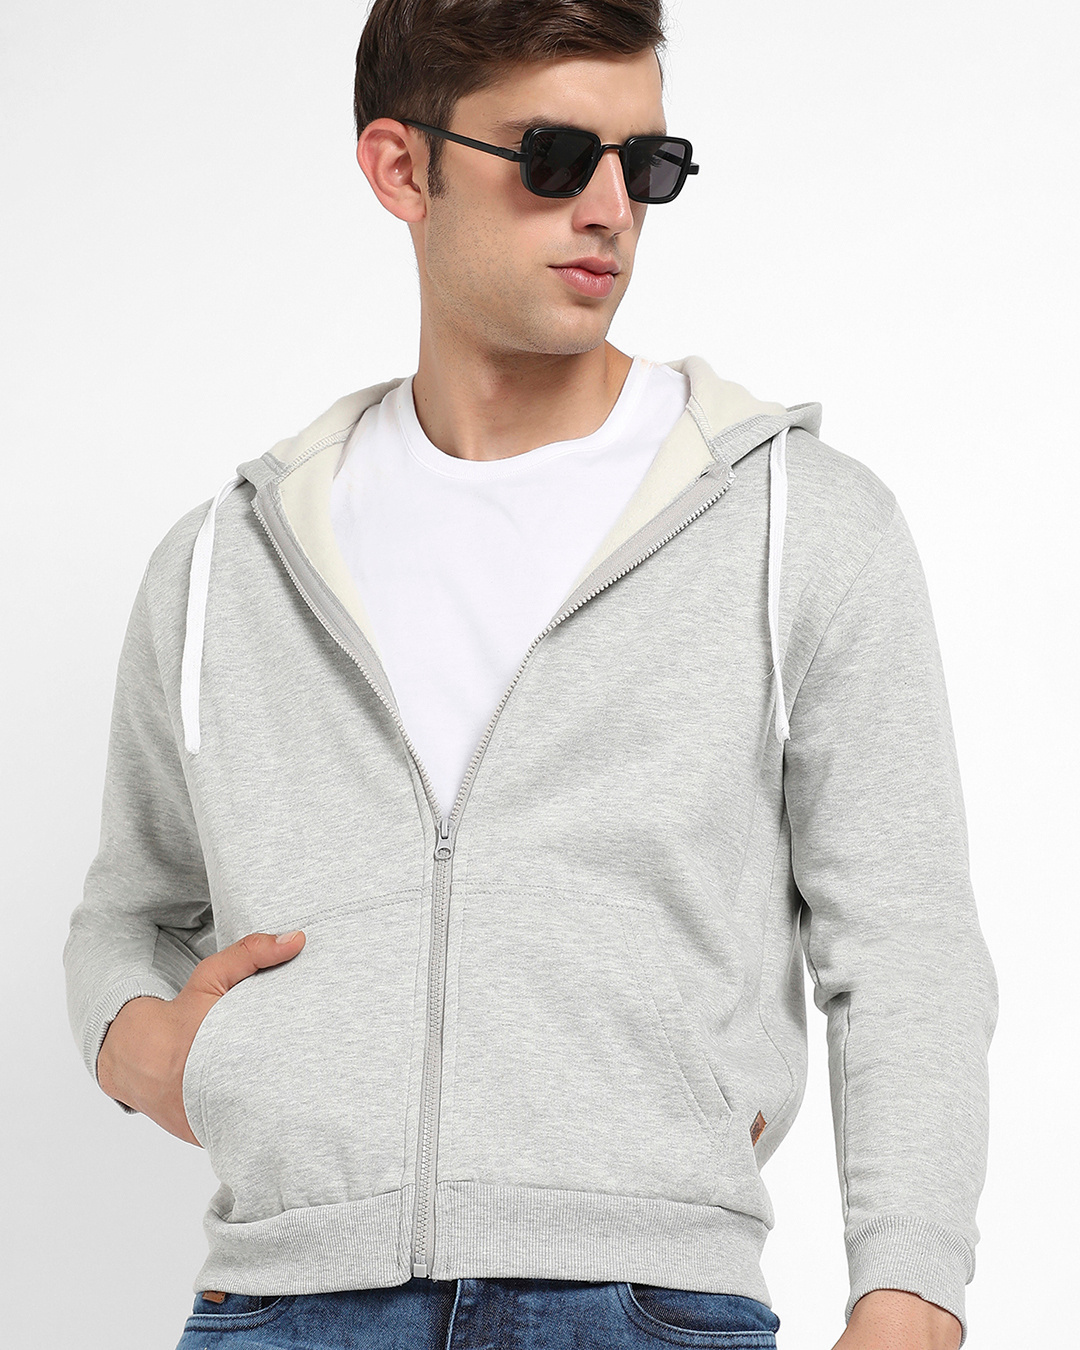 Buy Men's Light Grey Hoodies for Men Online at Bewakoof